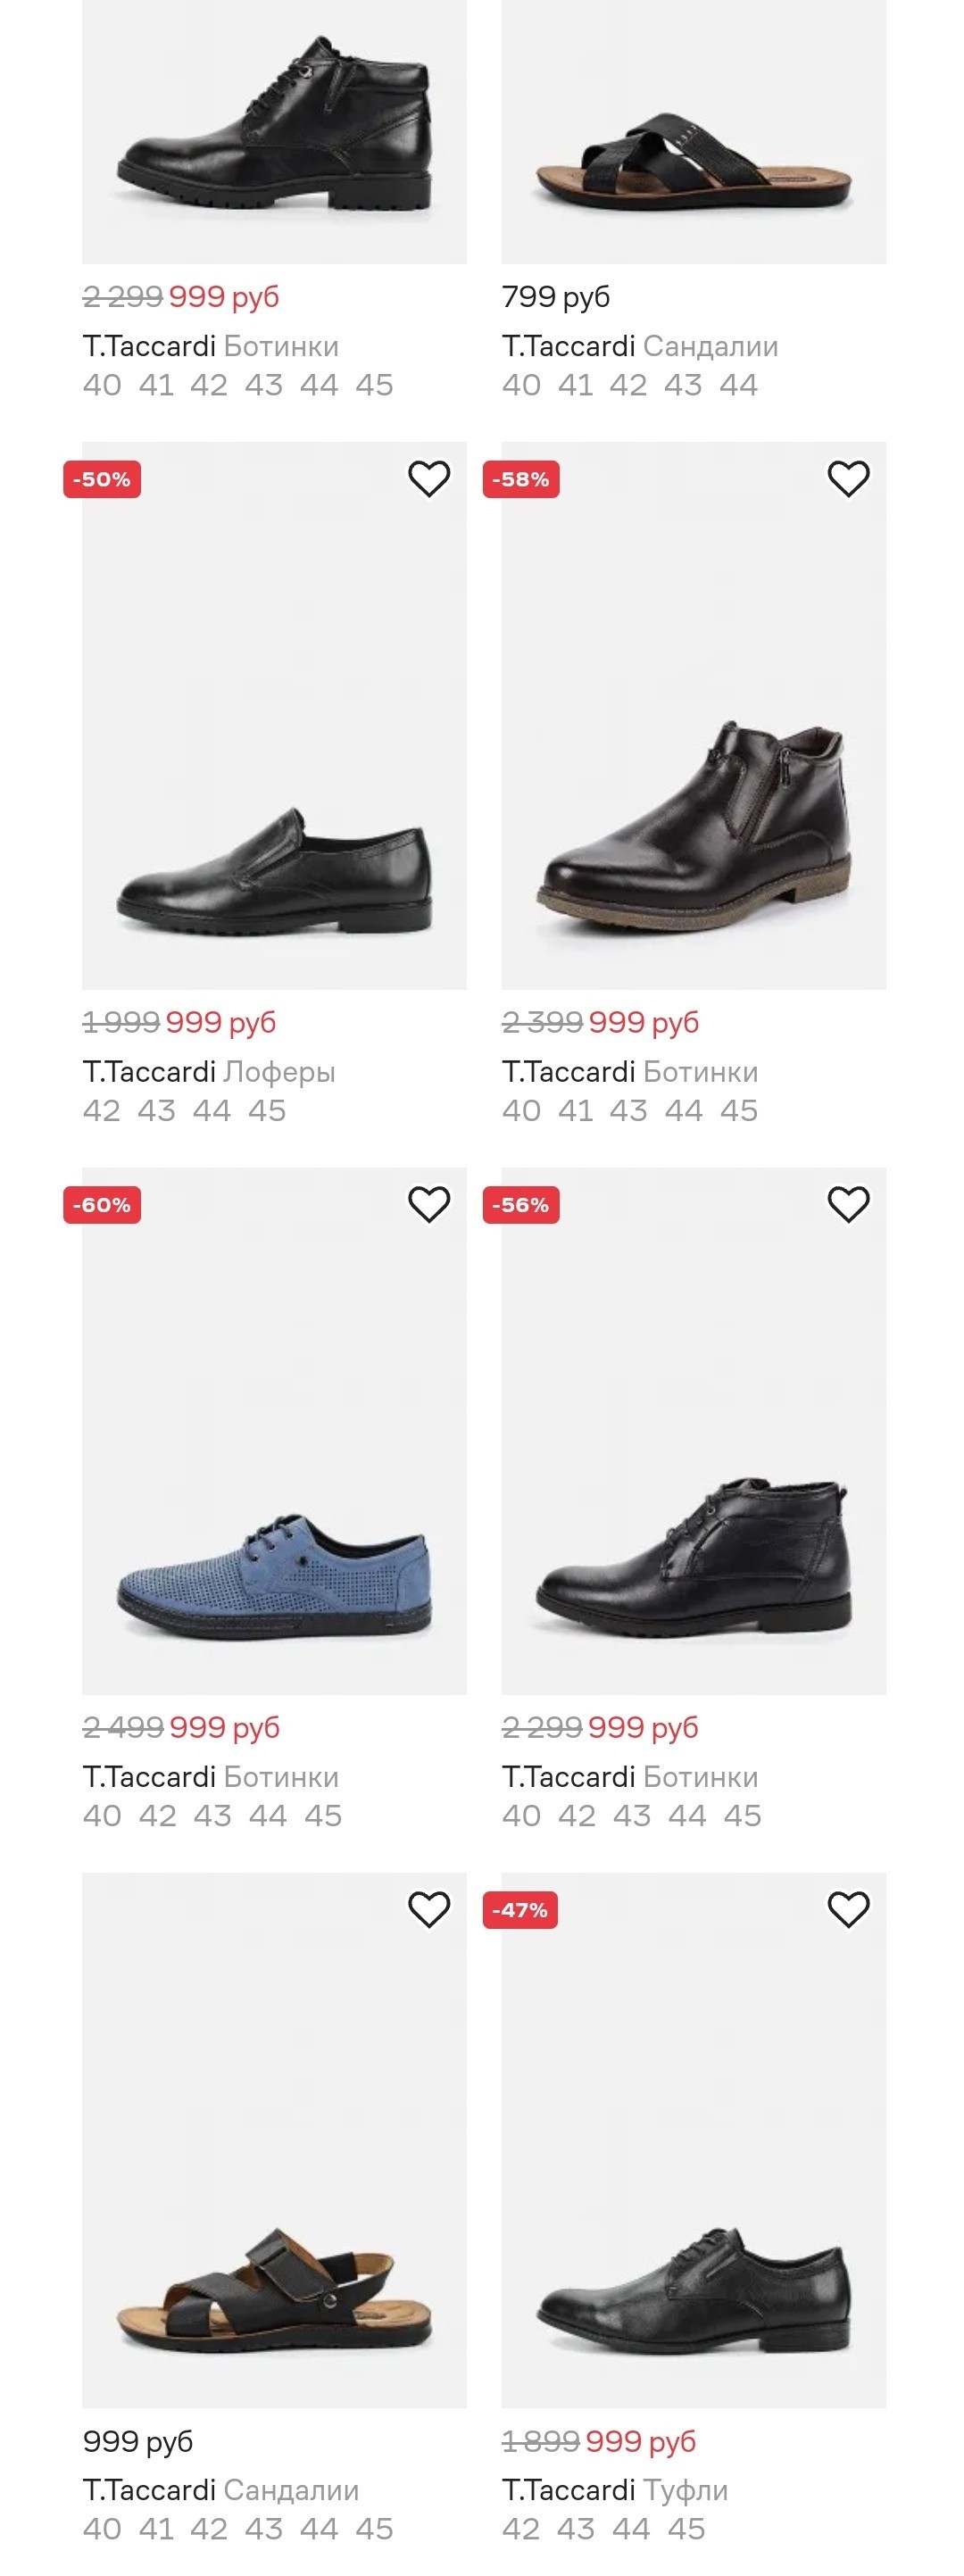 Магазин кари обувь каталог мужская. Kari интернет-магазин обуви. Фирма кари обувь чье производство. Чьё производство обуви в кари.